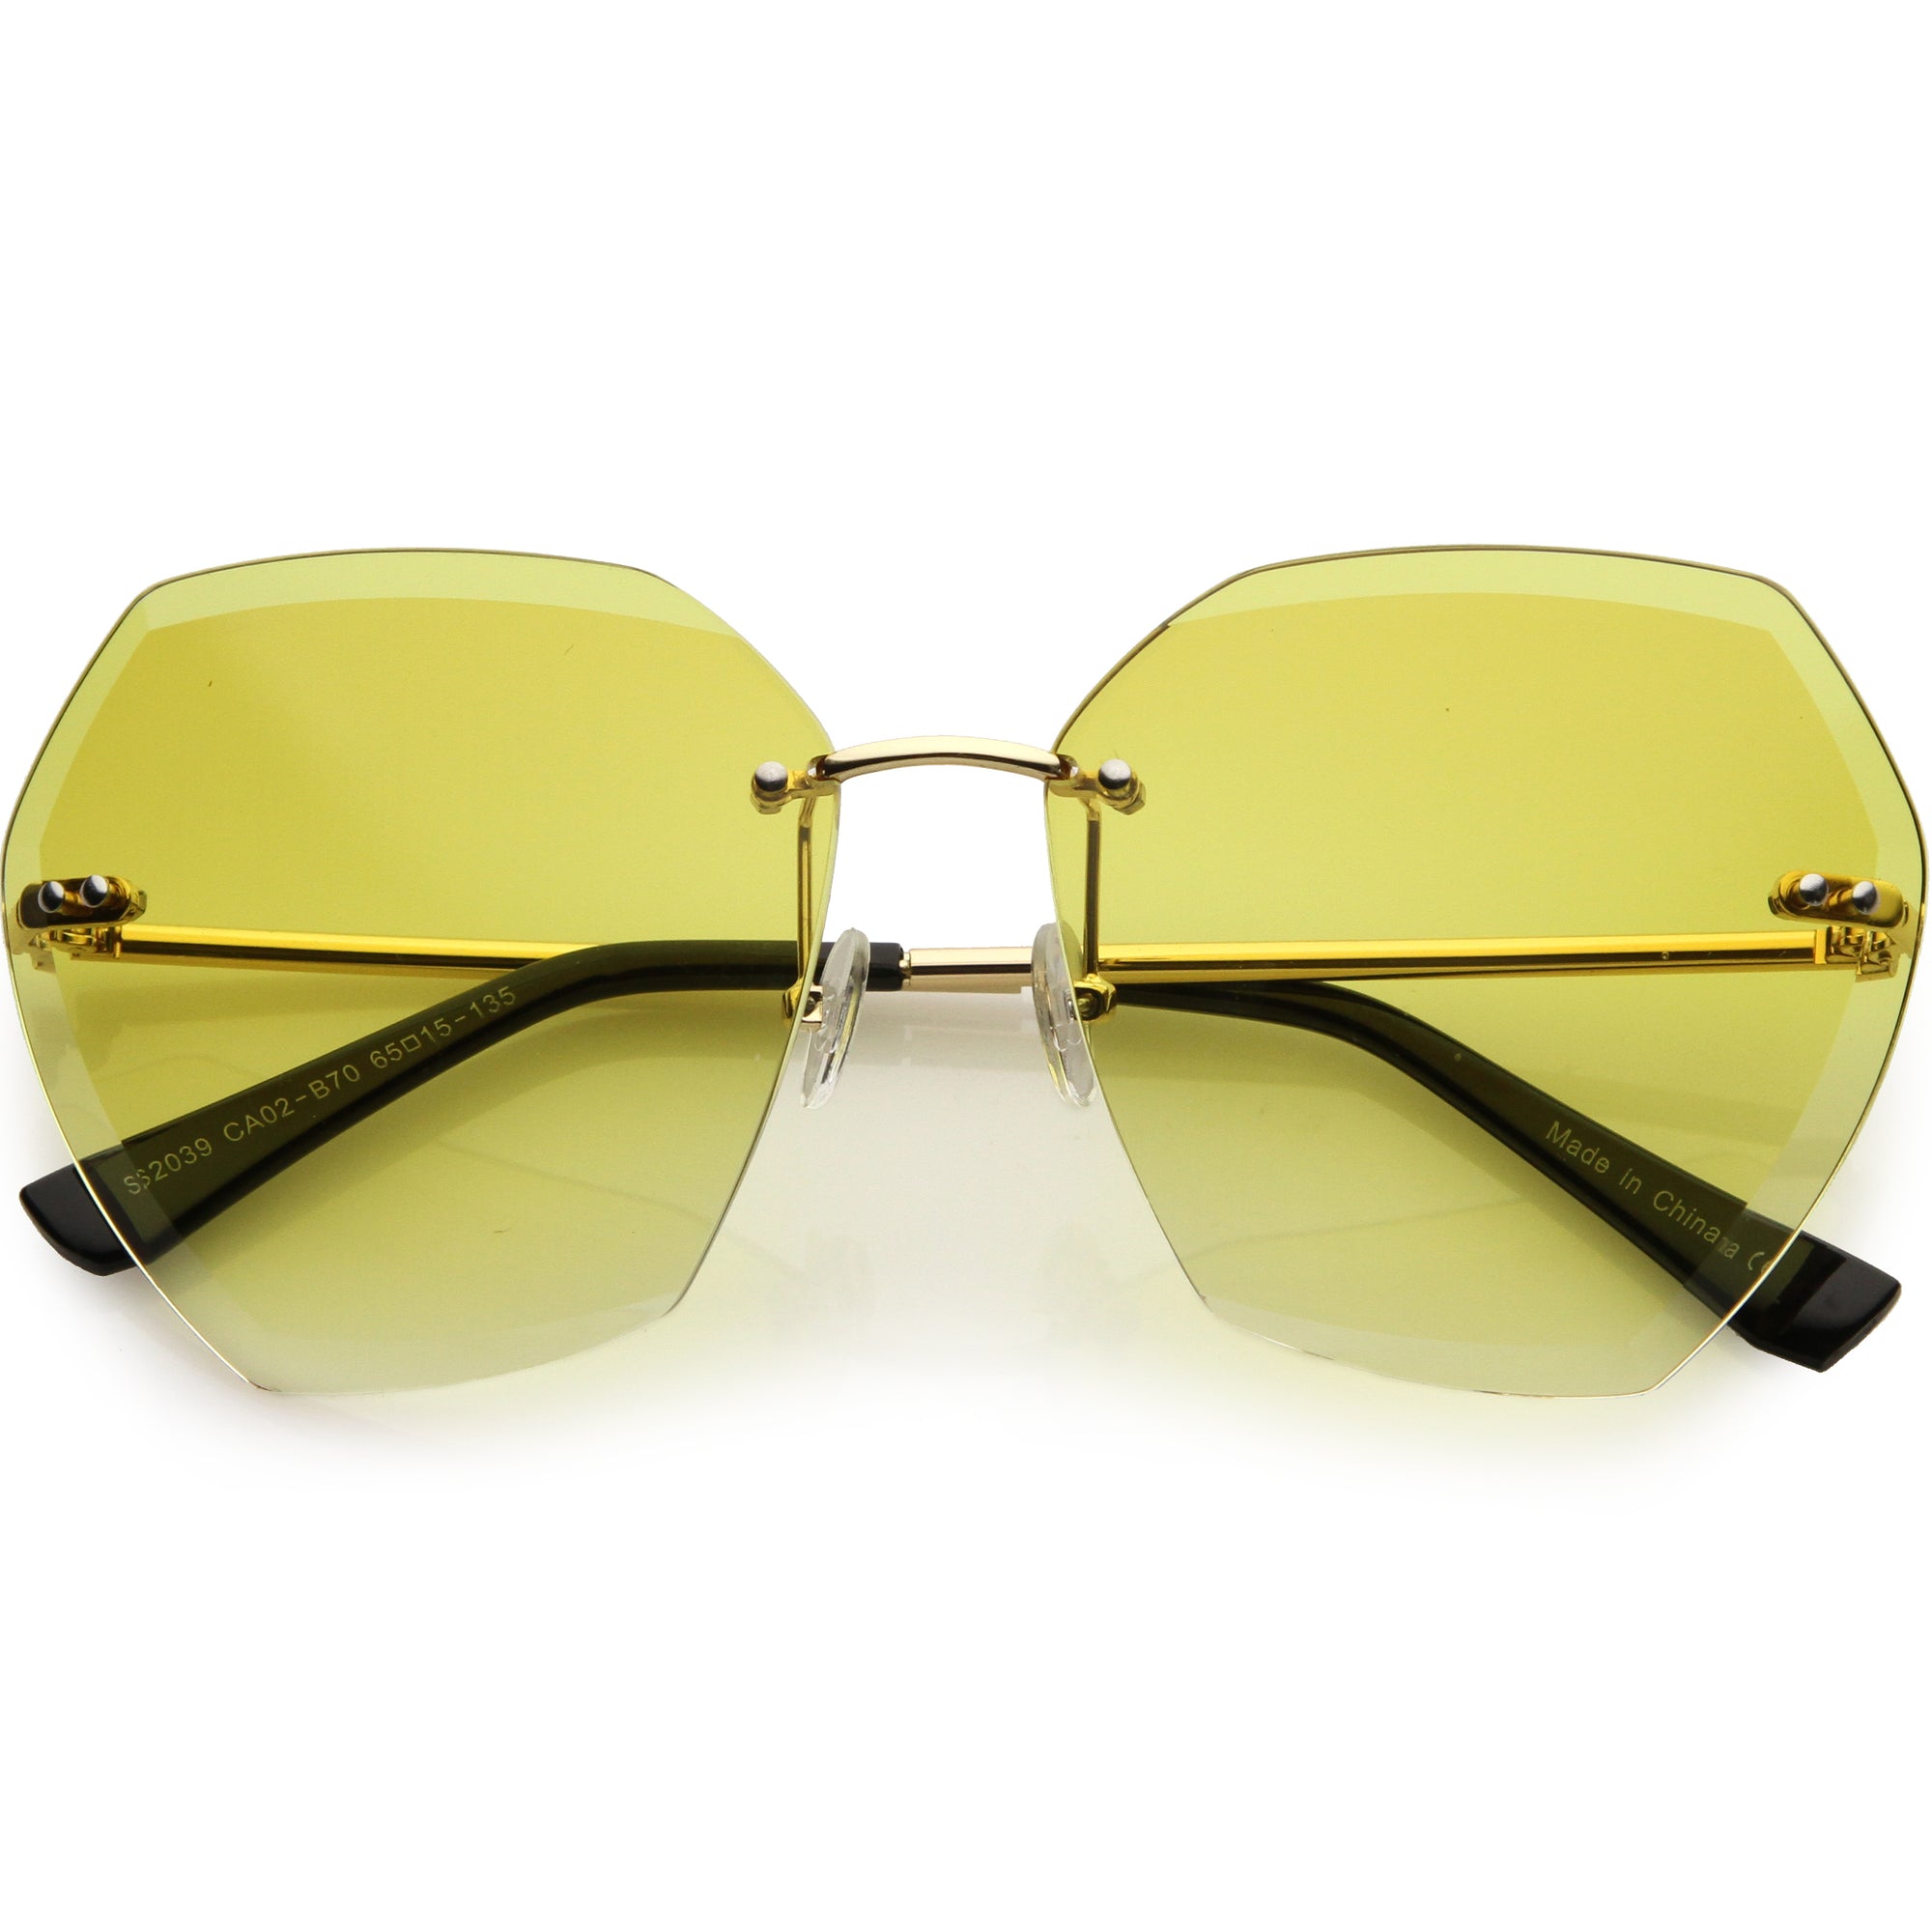 Gafas de sol geométricas con lentes degradados biselados sin montura de gran tamaño D014